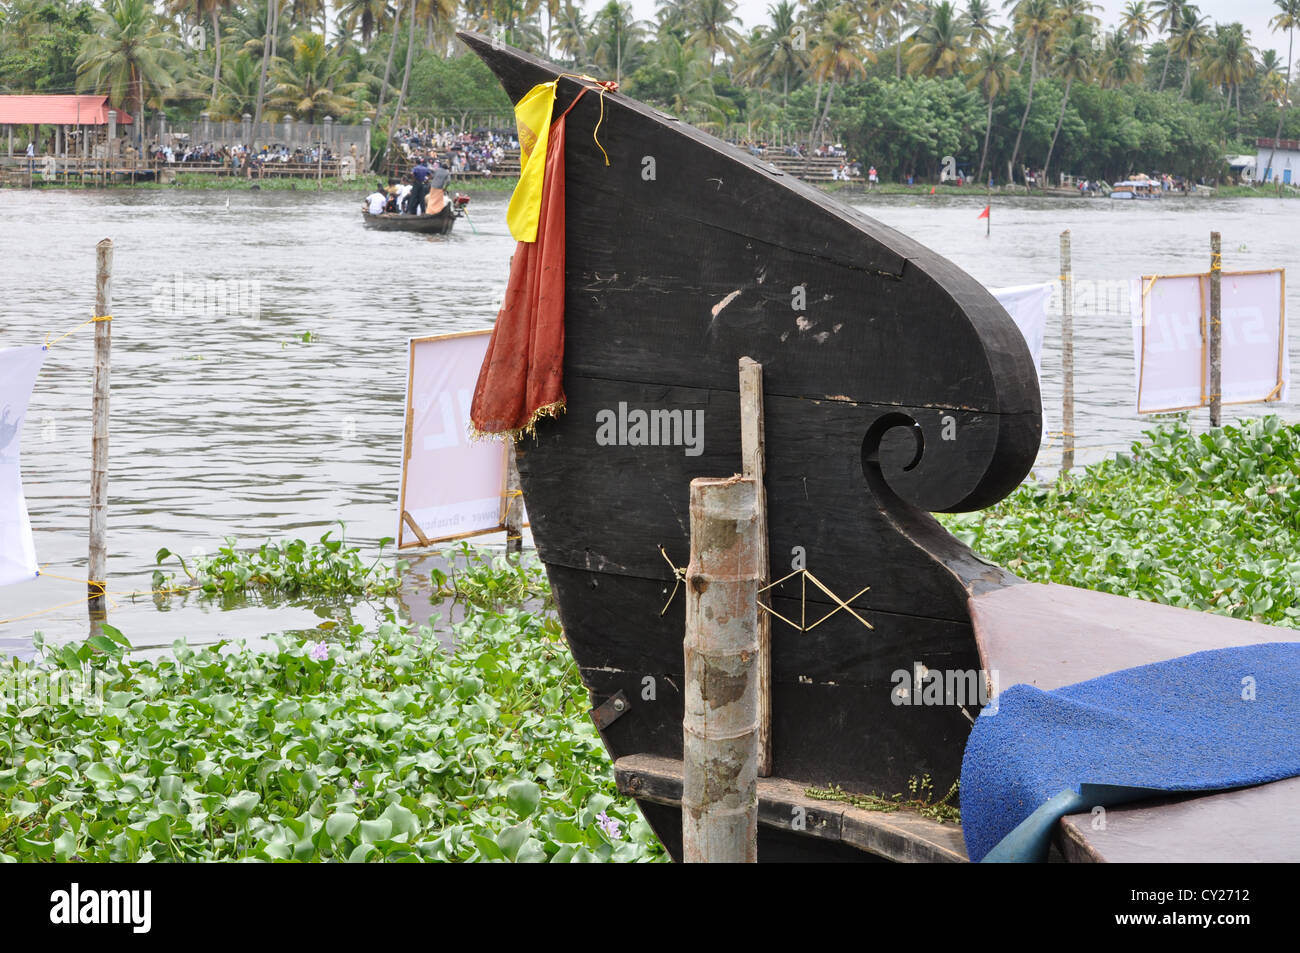 Nehru Boat Race Trophy si svolge ogni anno in Kerala. Foto Stock